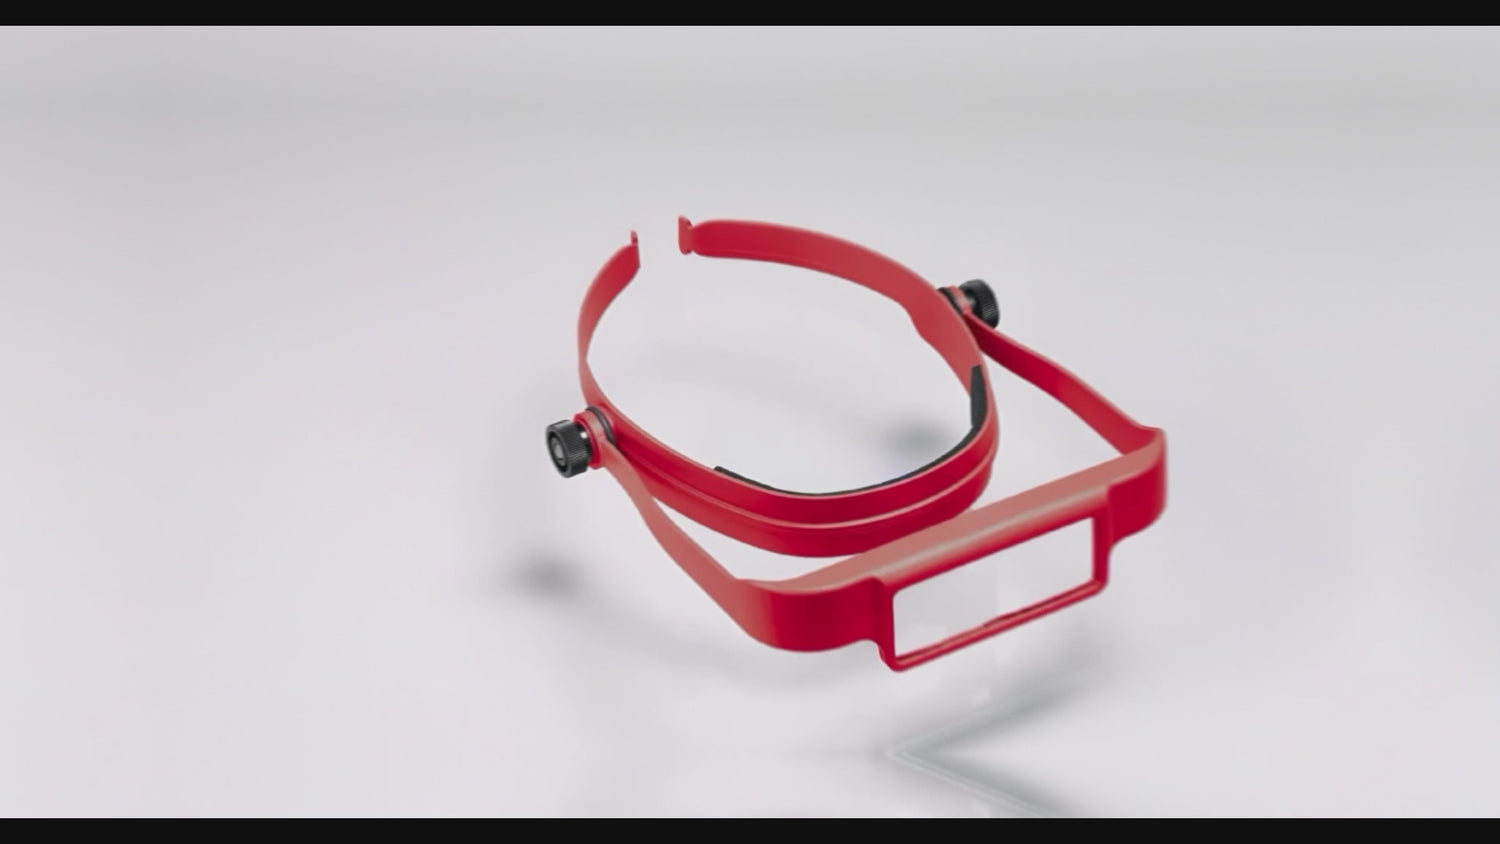 Donegan OptiSight Visor - Magnifying Glasses